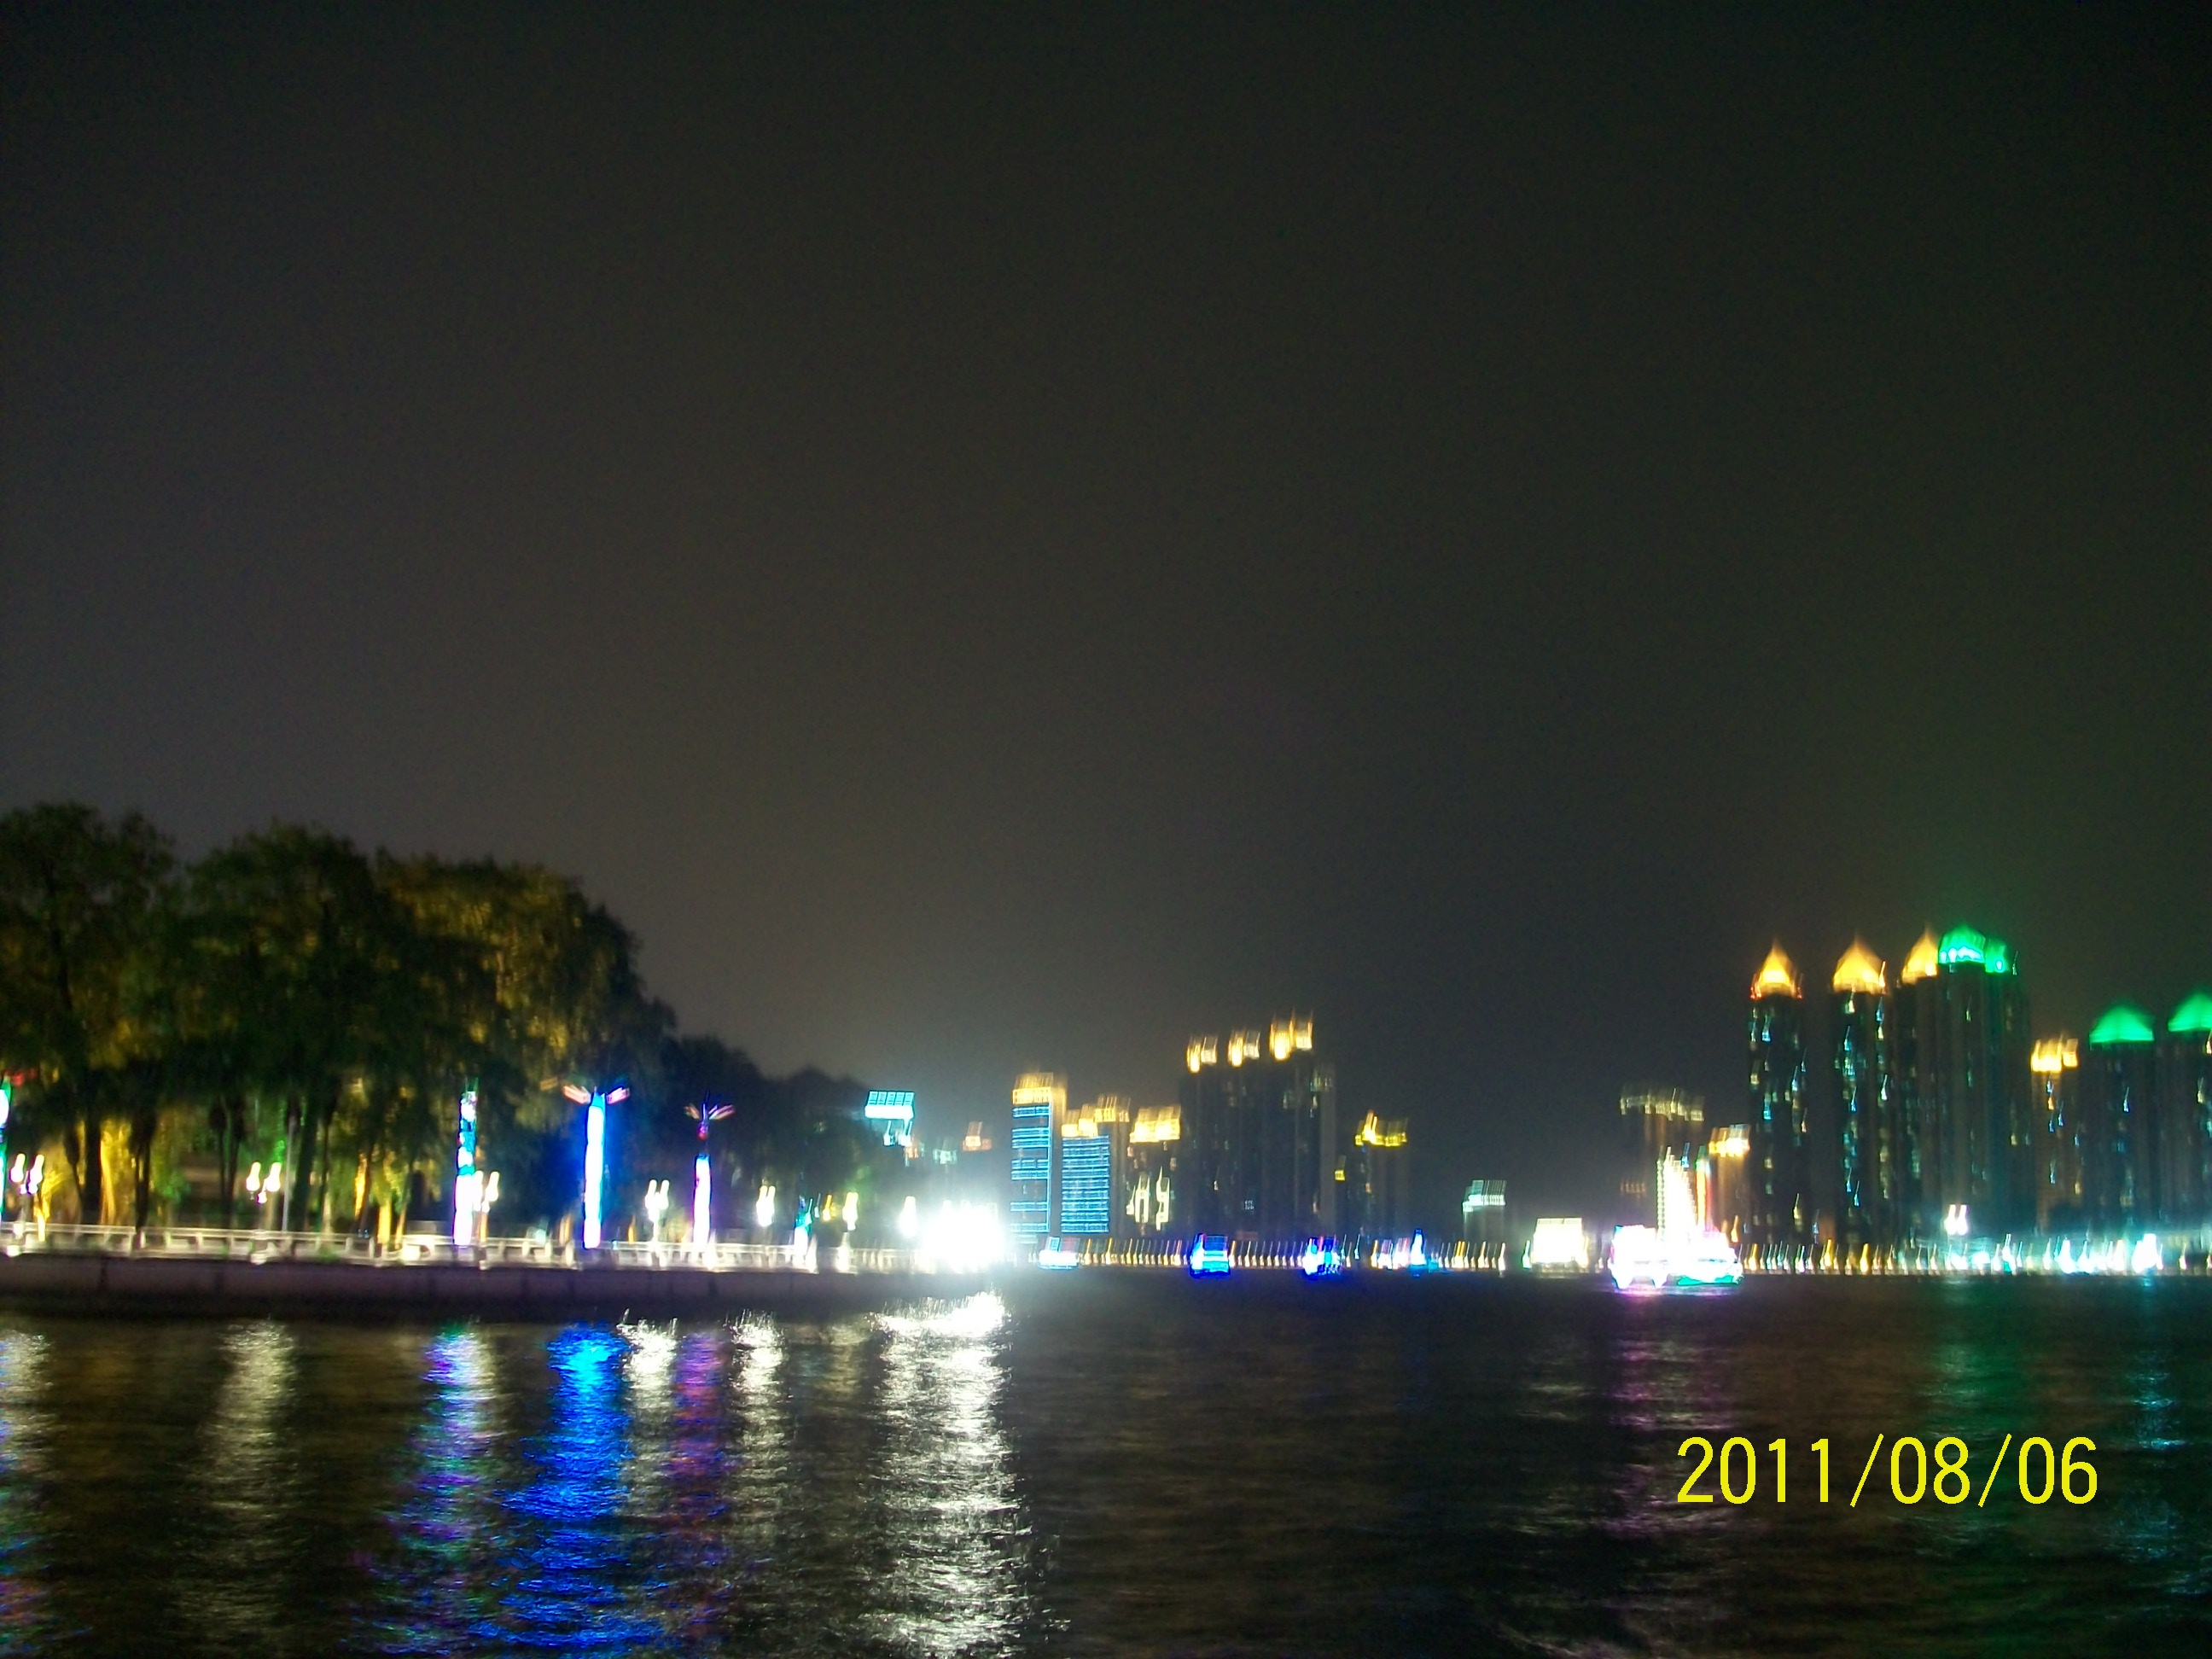 广州海印桥夜景836 / 作者:完美夏天 / 帖子ID:873